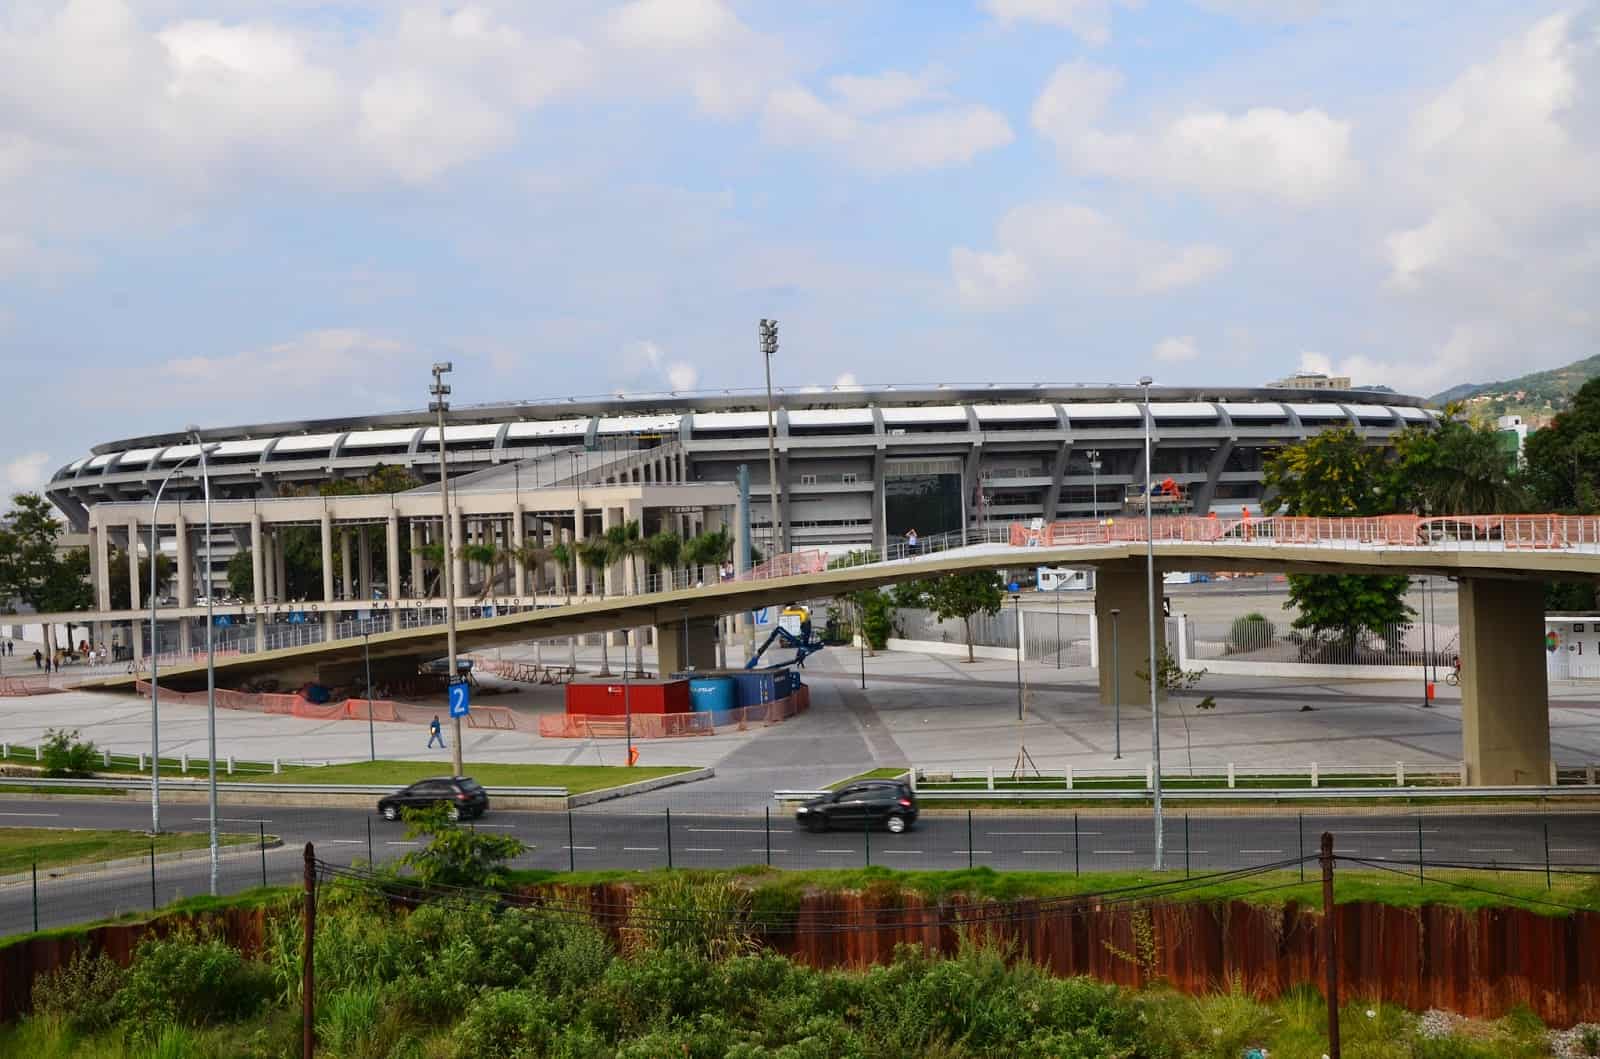 Estádio do Maracanã in Rio de Janeiro, Brazil